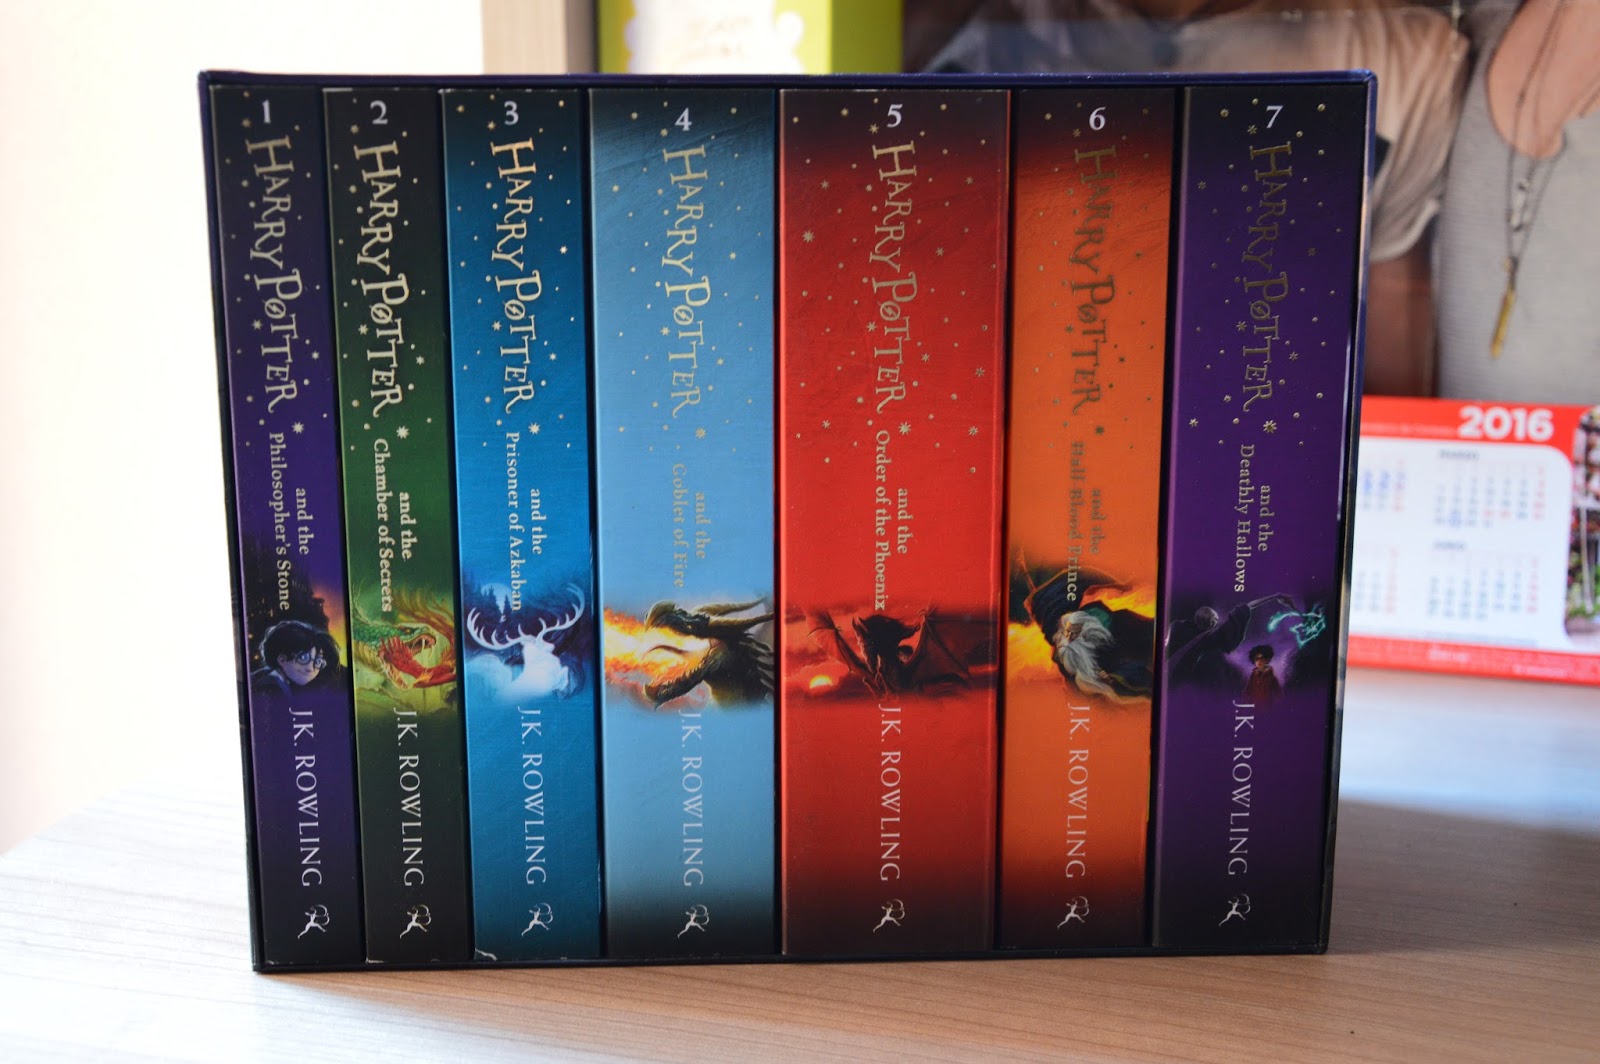 Refugio de una Cazadora de ideas: Colección de libros Harry Potter.